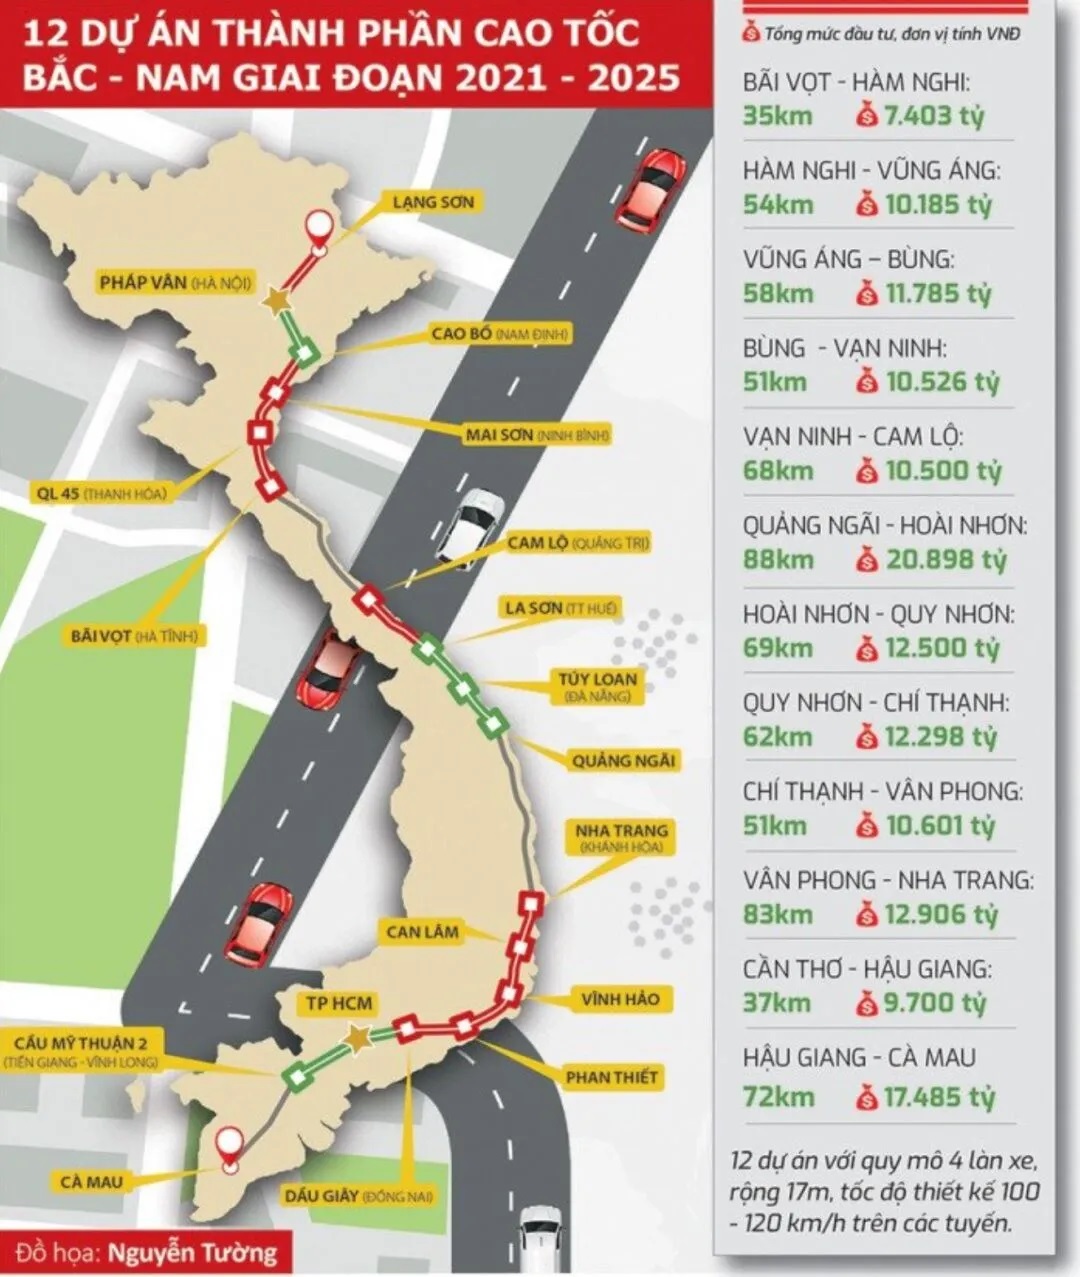 Cao tốc Quy Nhơn - Chí Thạnh - Đoạn cao tốc gần 15.000 tỷ đồng, mỗi km lại có một mũi thi công, dự kiến vượt tiến độ 3 tháng.